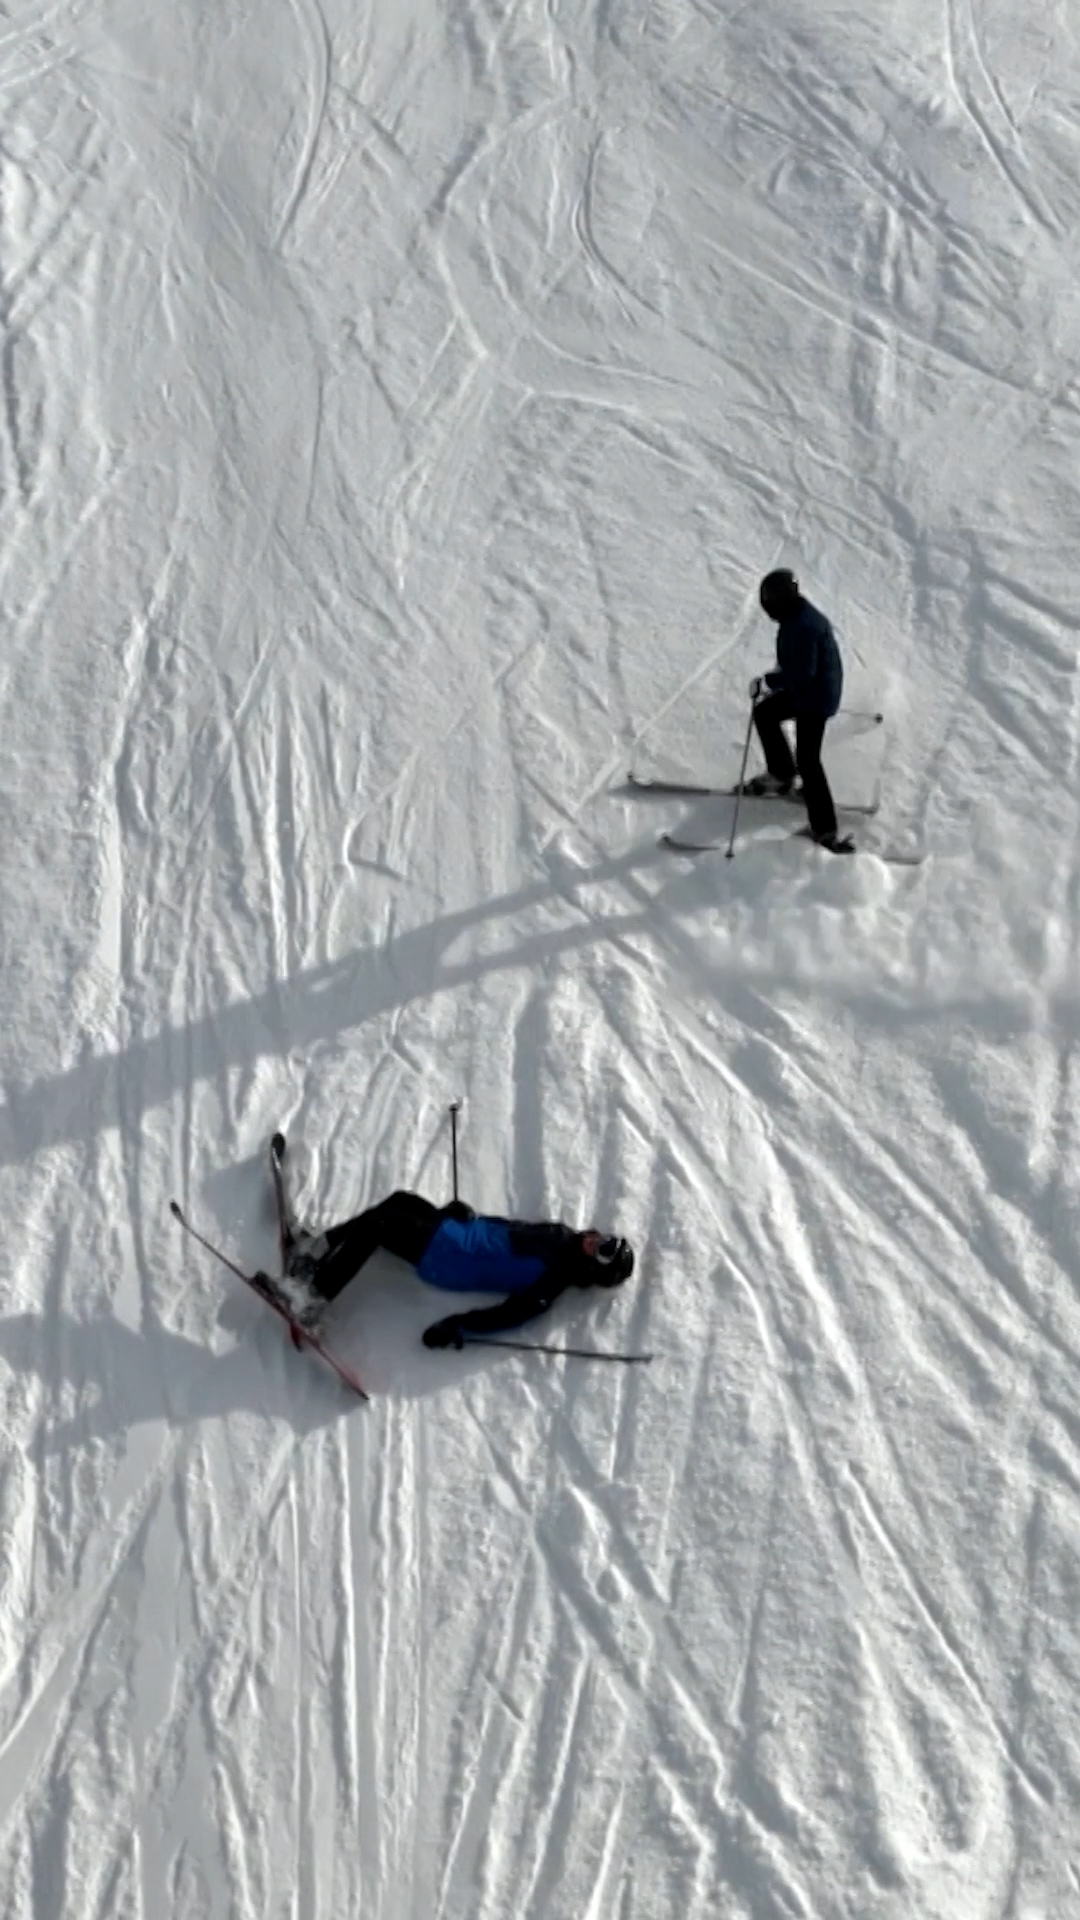 Skier crashing